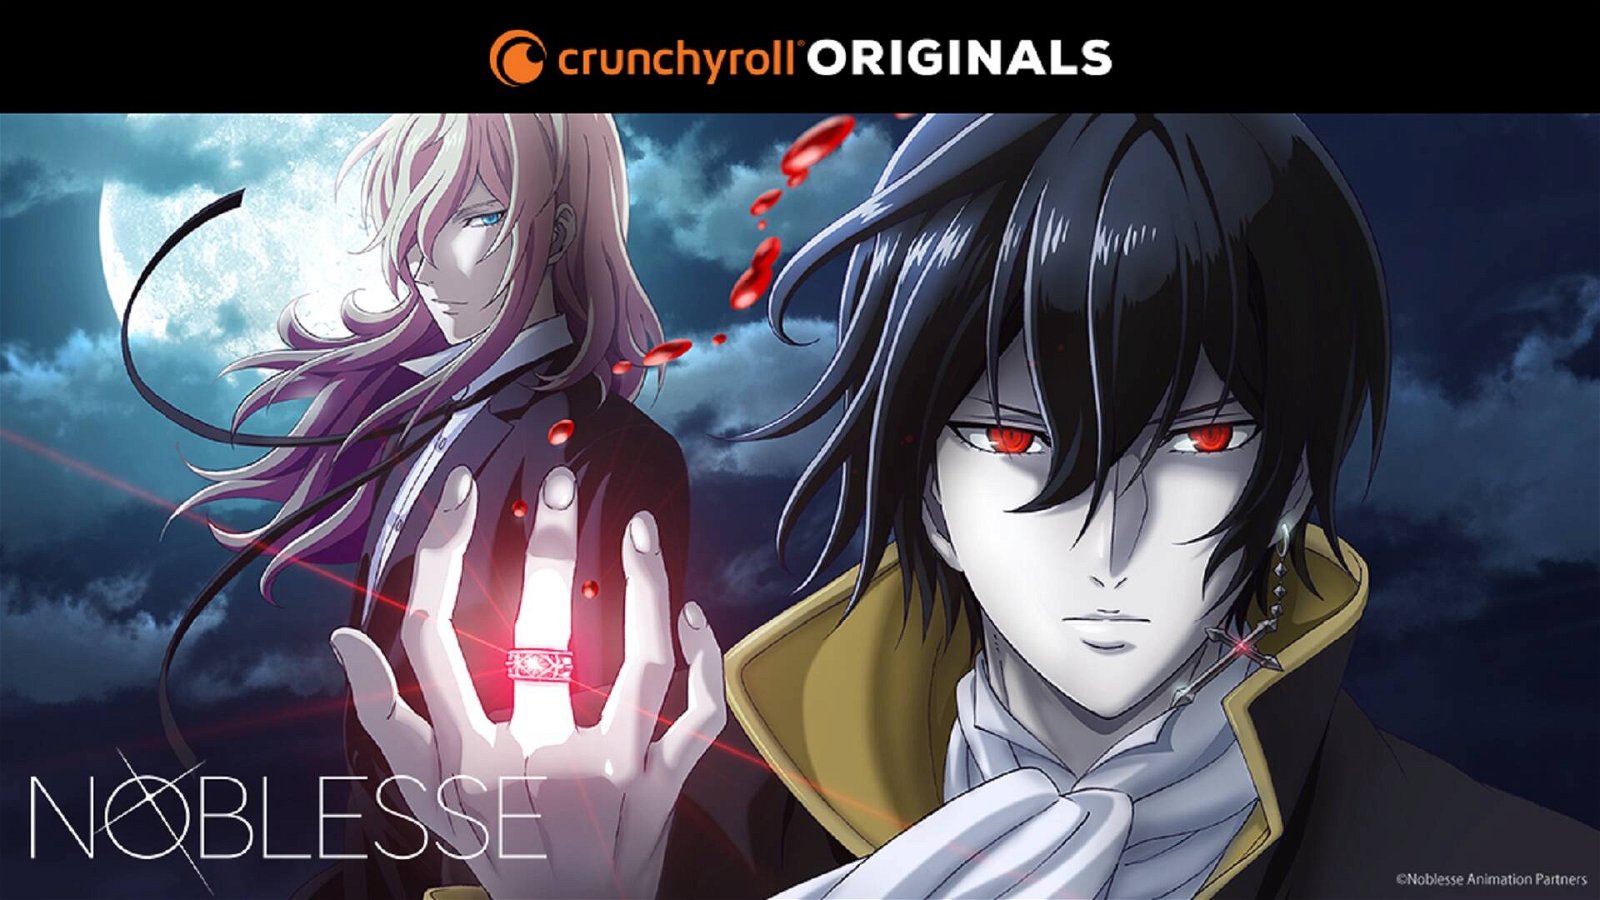 Immagine di Noblesse: trailer italiano del nuovo anime Crunchyroll Originals